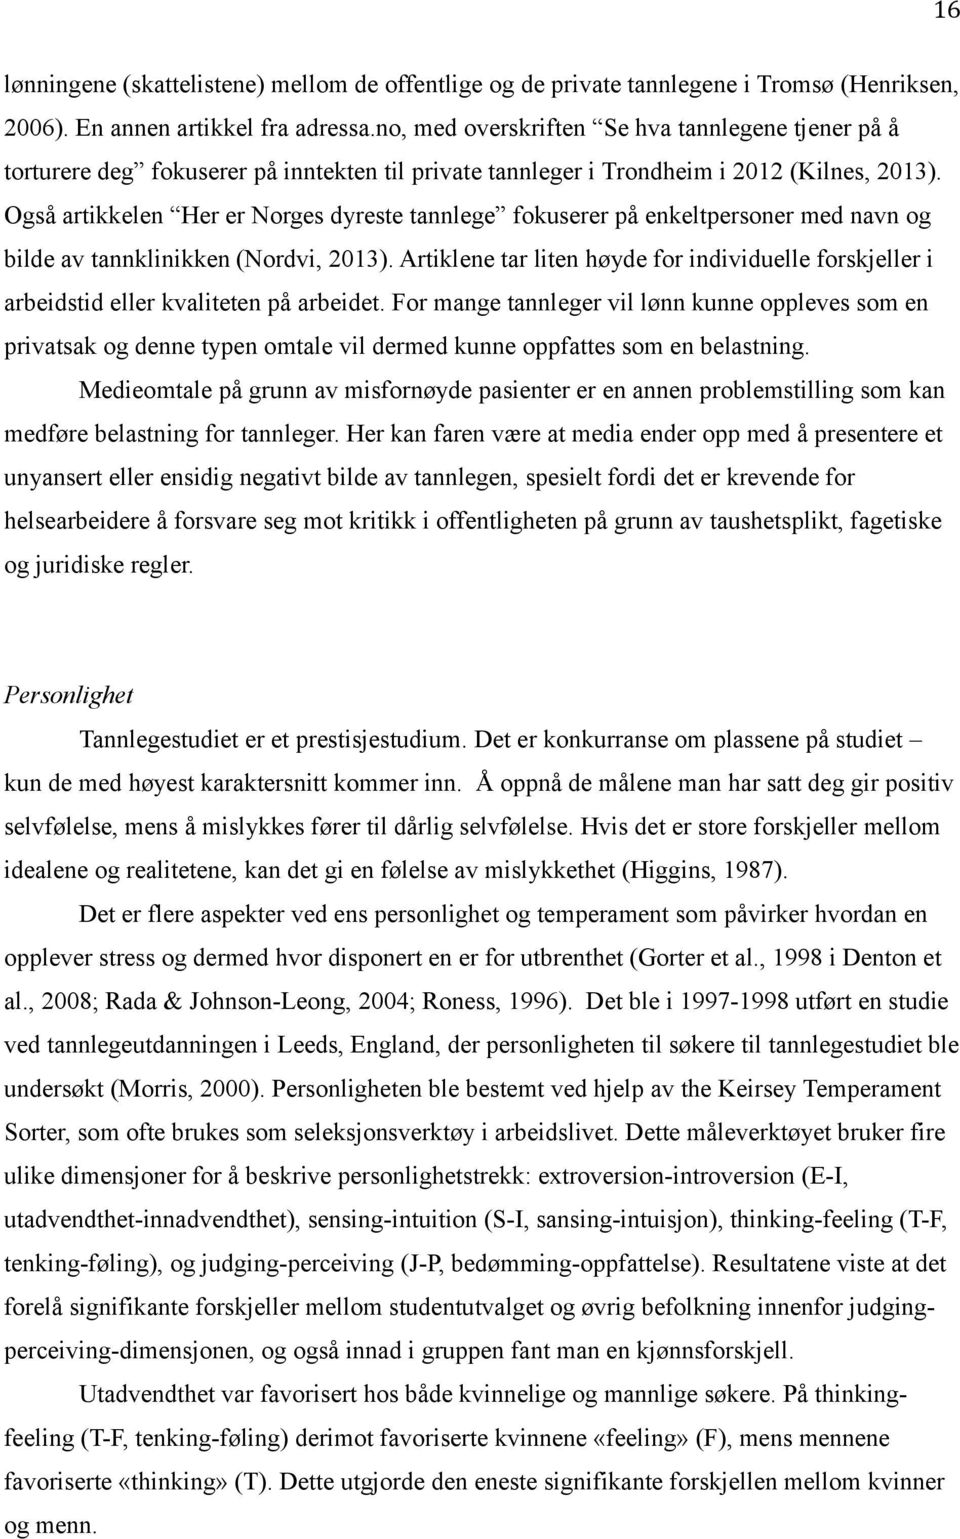 Også artikkelen Her er Norges dyreste tannlege fokuserer på enkeltpersoner med navn og bilde av tannklinikken (Nordvi, 2013).